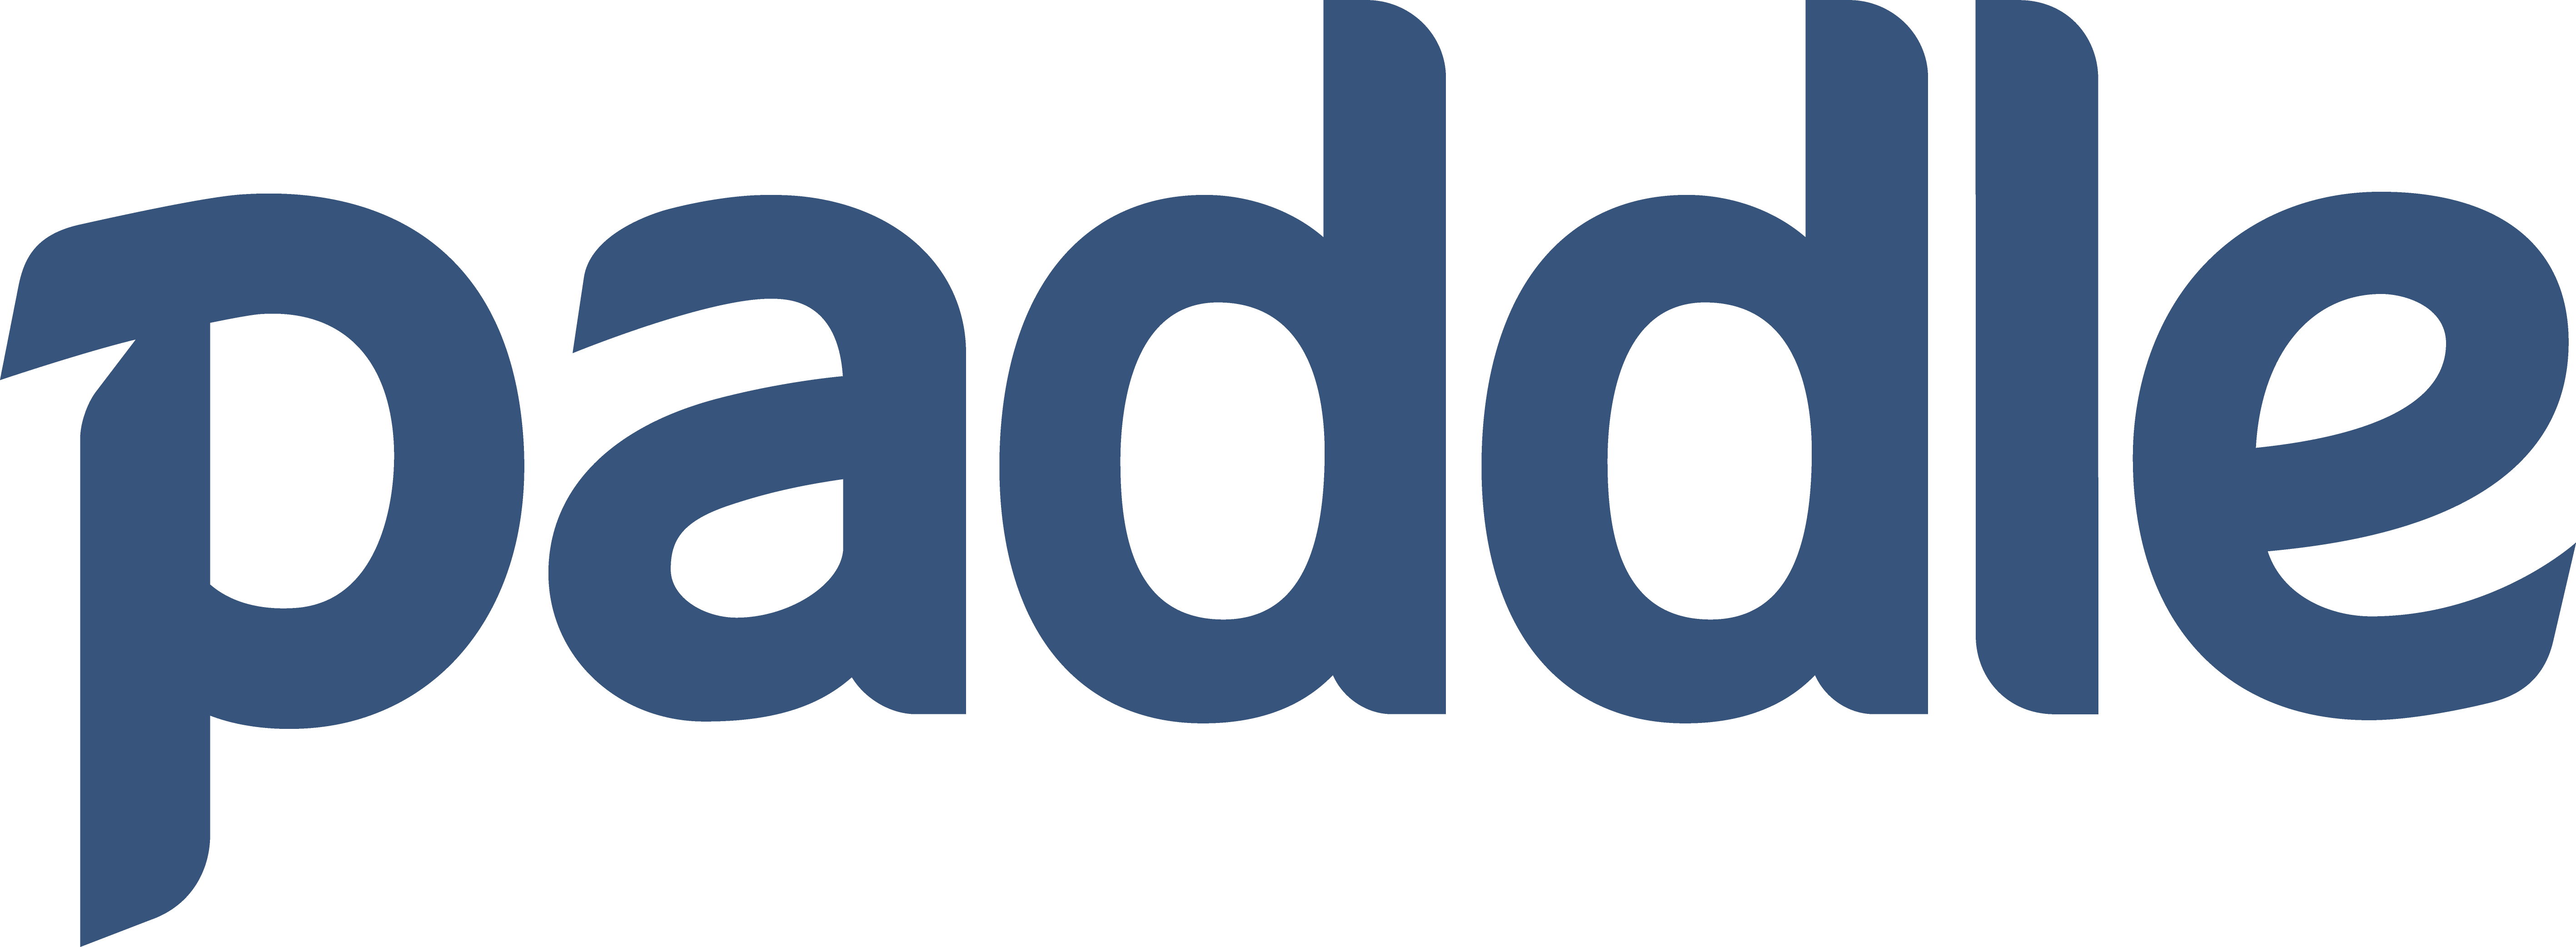 Paddle logo | ImportFeed